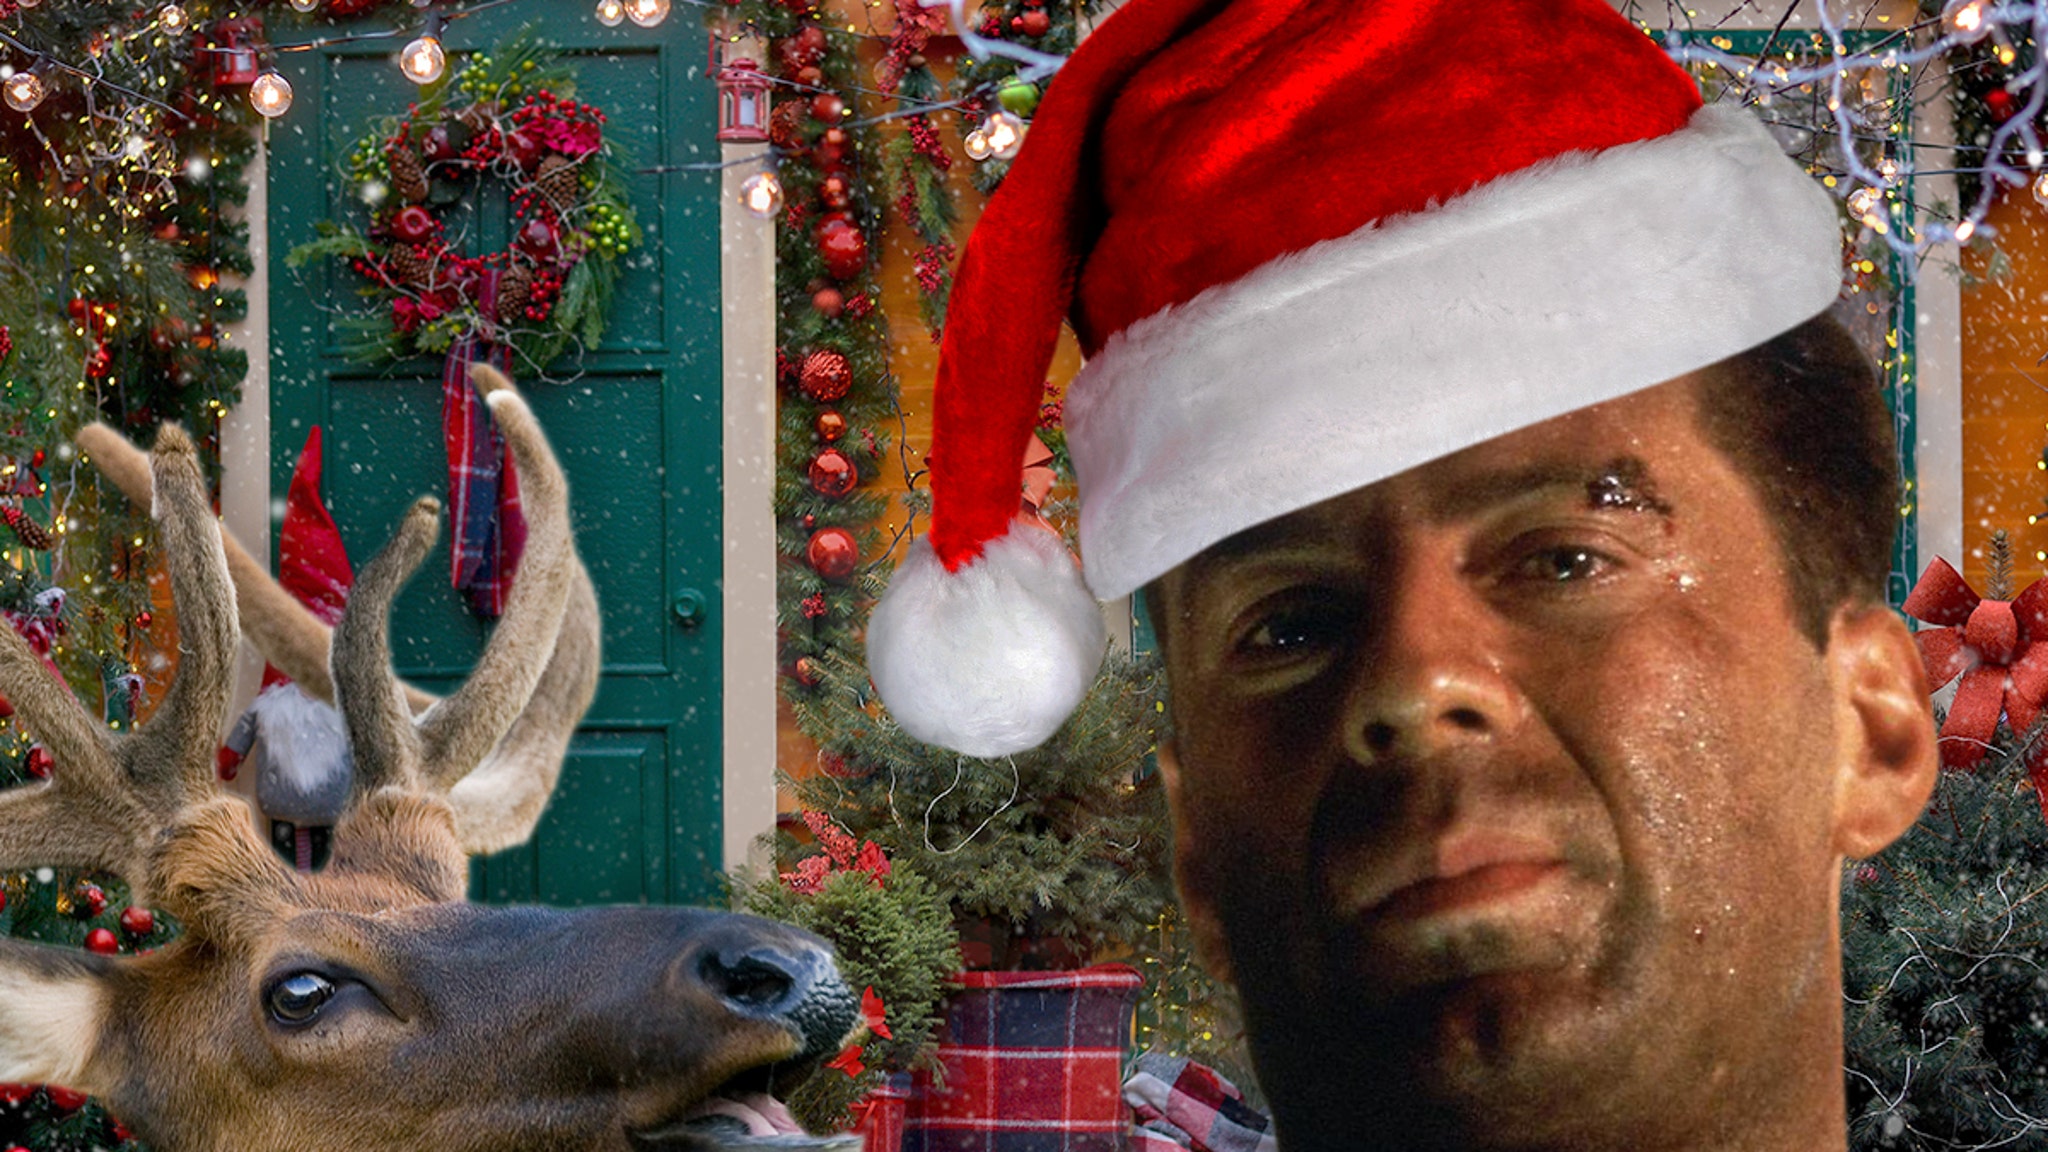 Bruce Willis’ Mom Weighs In on ‘Die Hard’ Christmas Movie Debate